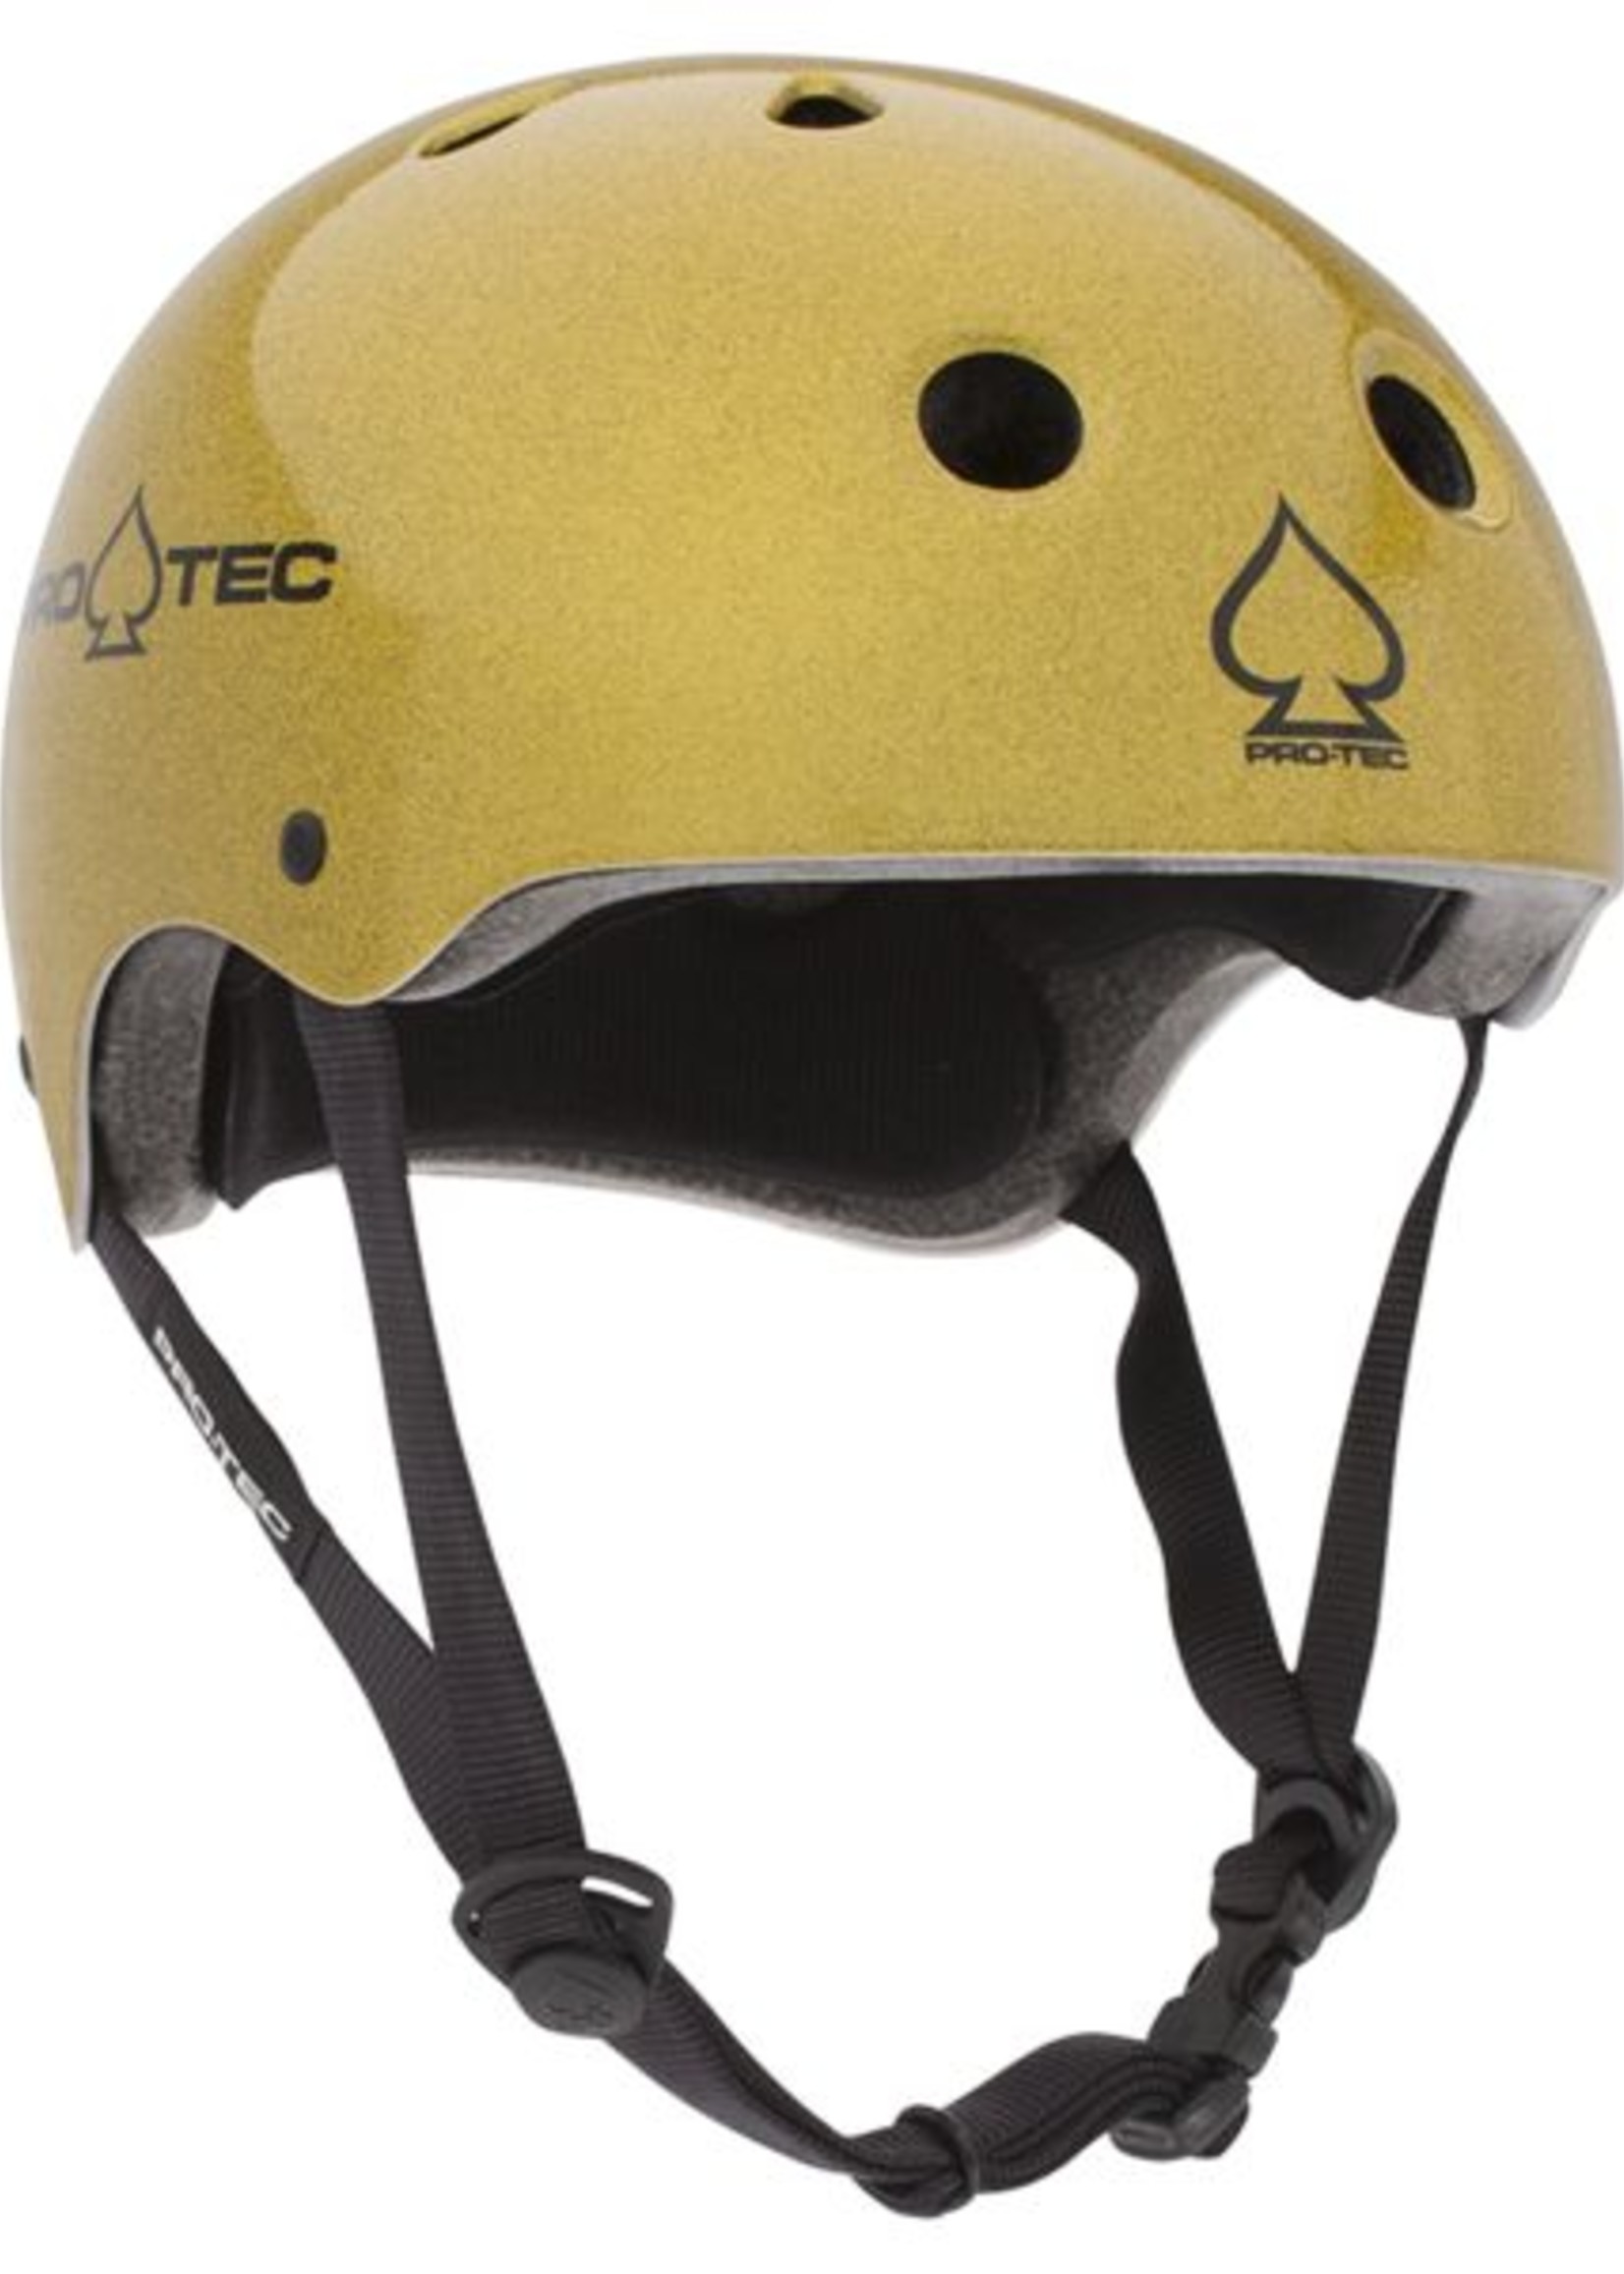 Pro-tec Classic Certified Helmet